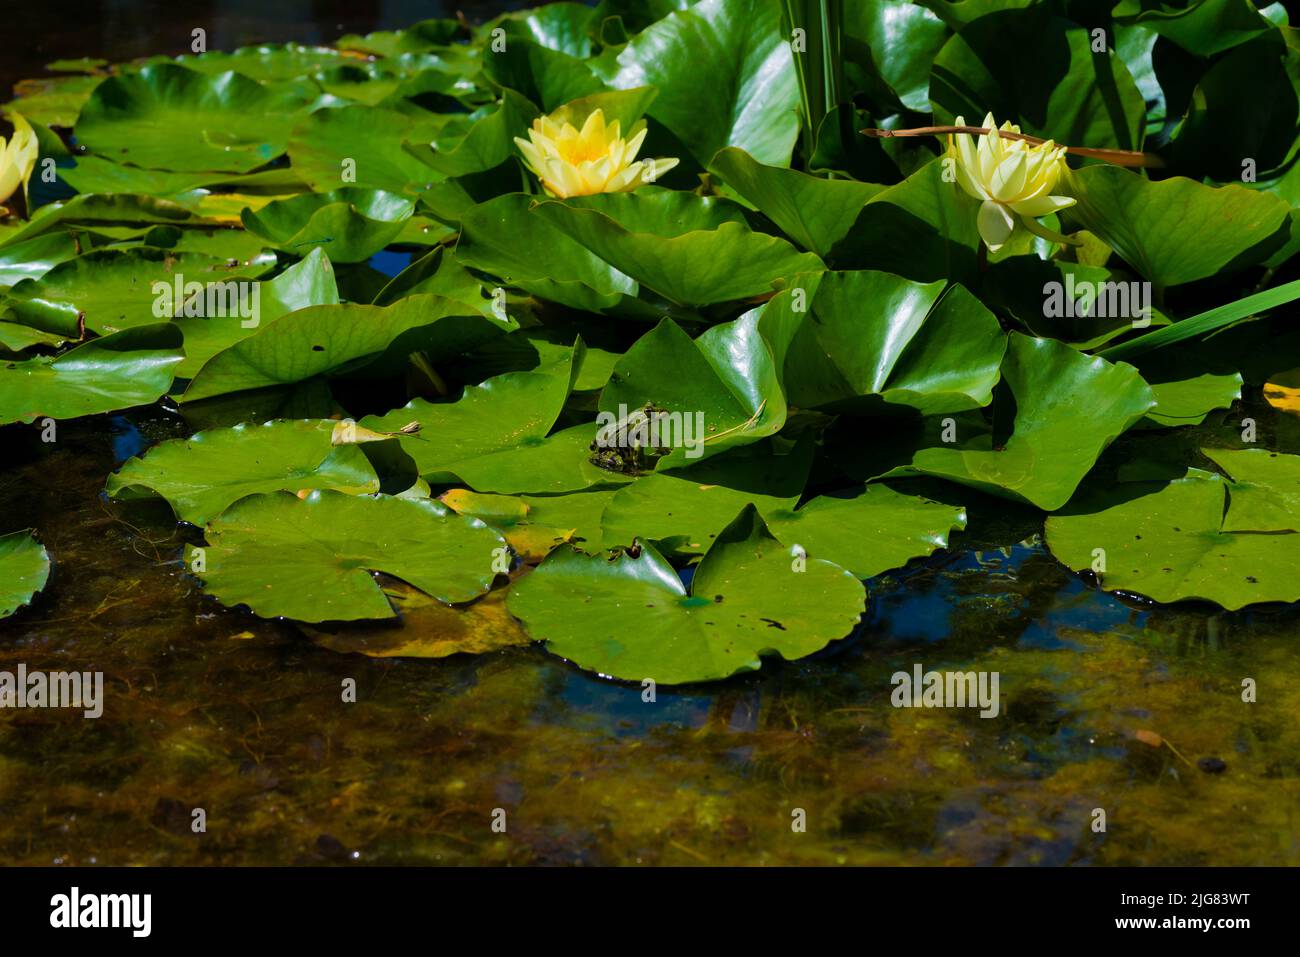 Fleurs de nénuphars avec des feuilles vertes dans un étang, une grenouille verte assise au soleil sur une feuille Banque D'Images